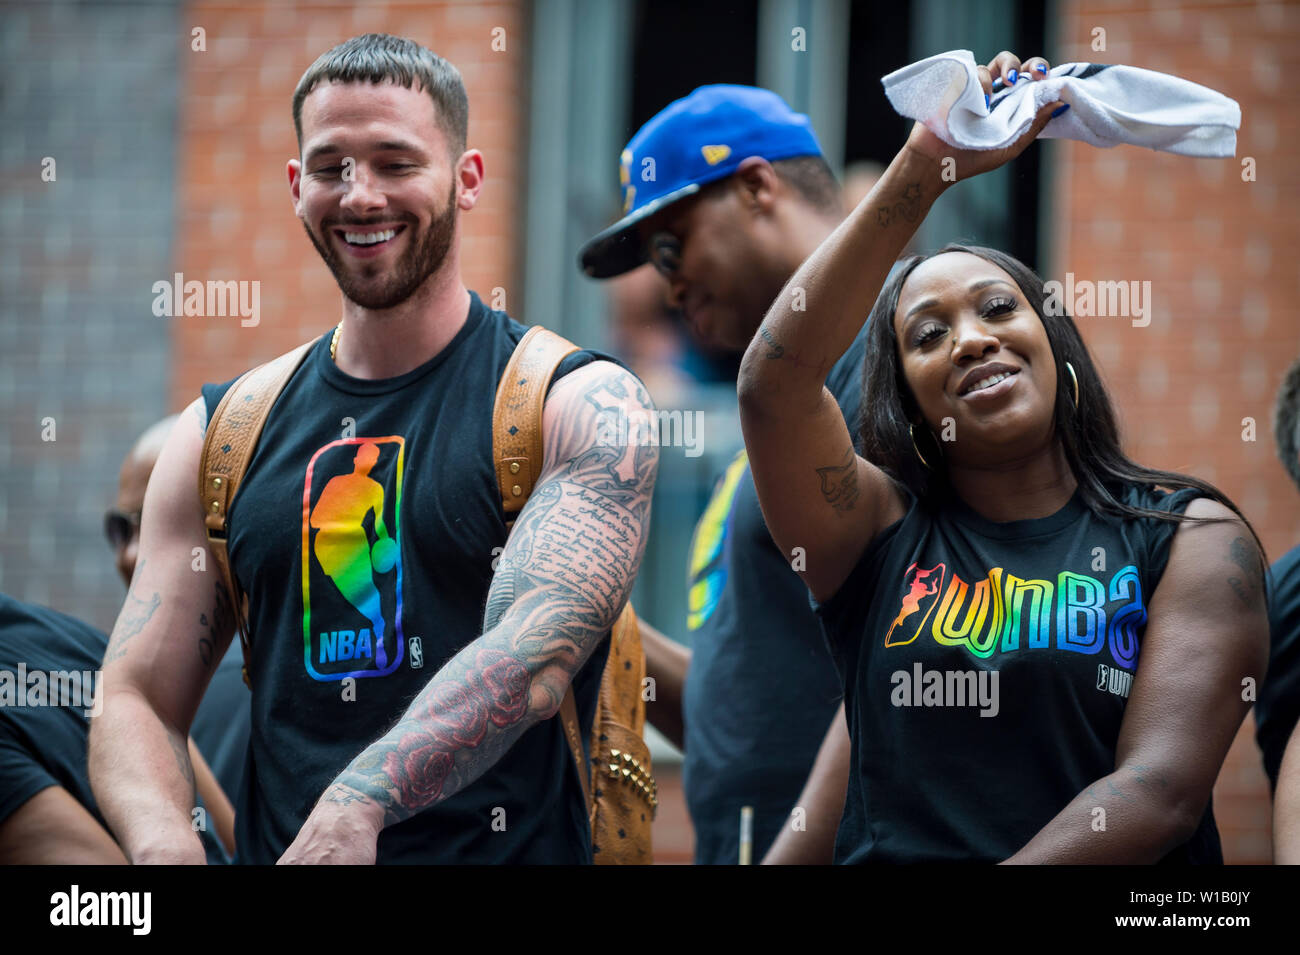 NEW YORK - 25 juin 2017 : Les participants port shirts parrainé par la NBA et WNBA vague de ligues sportives à partir d'un flotteur dans la Parade de la gay Pride. Banque D'Images